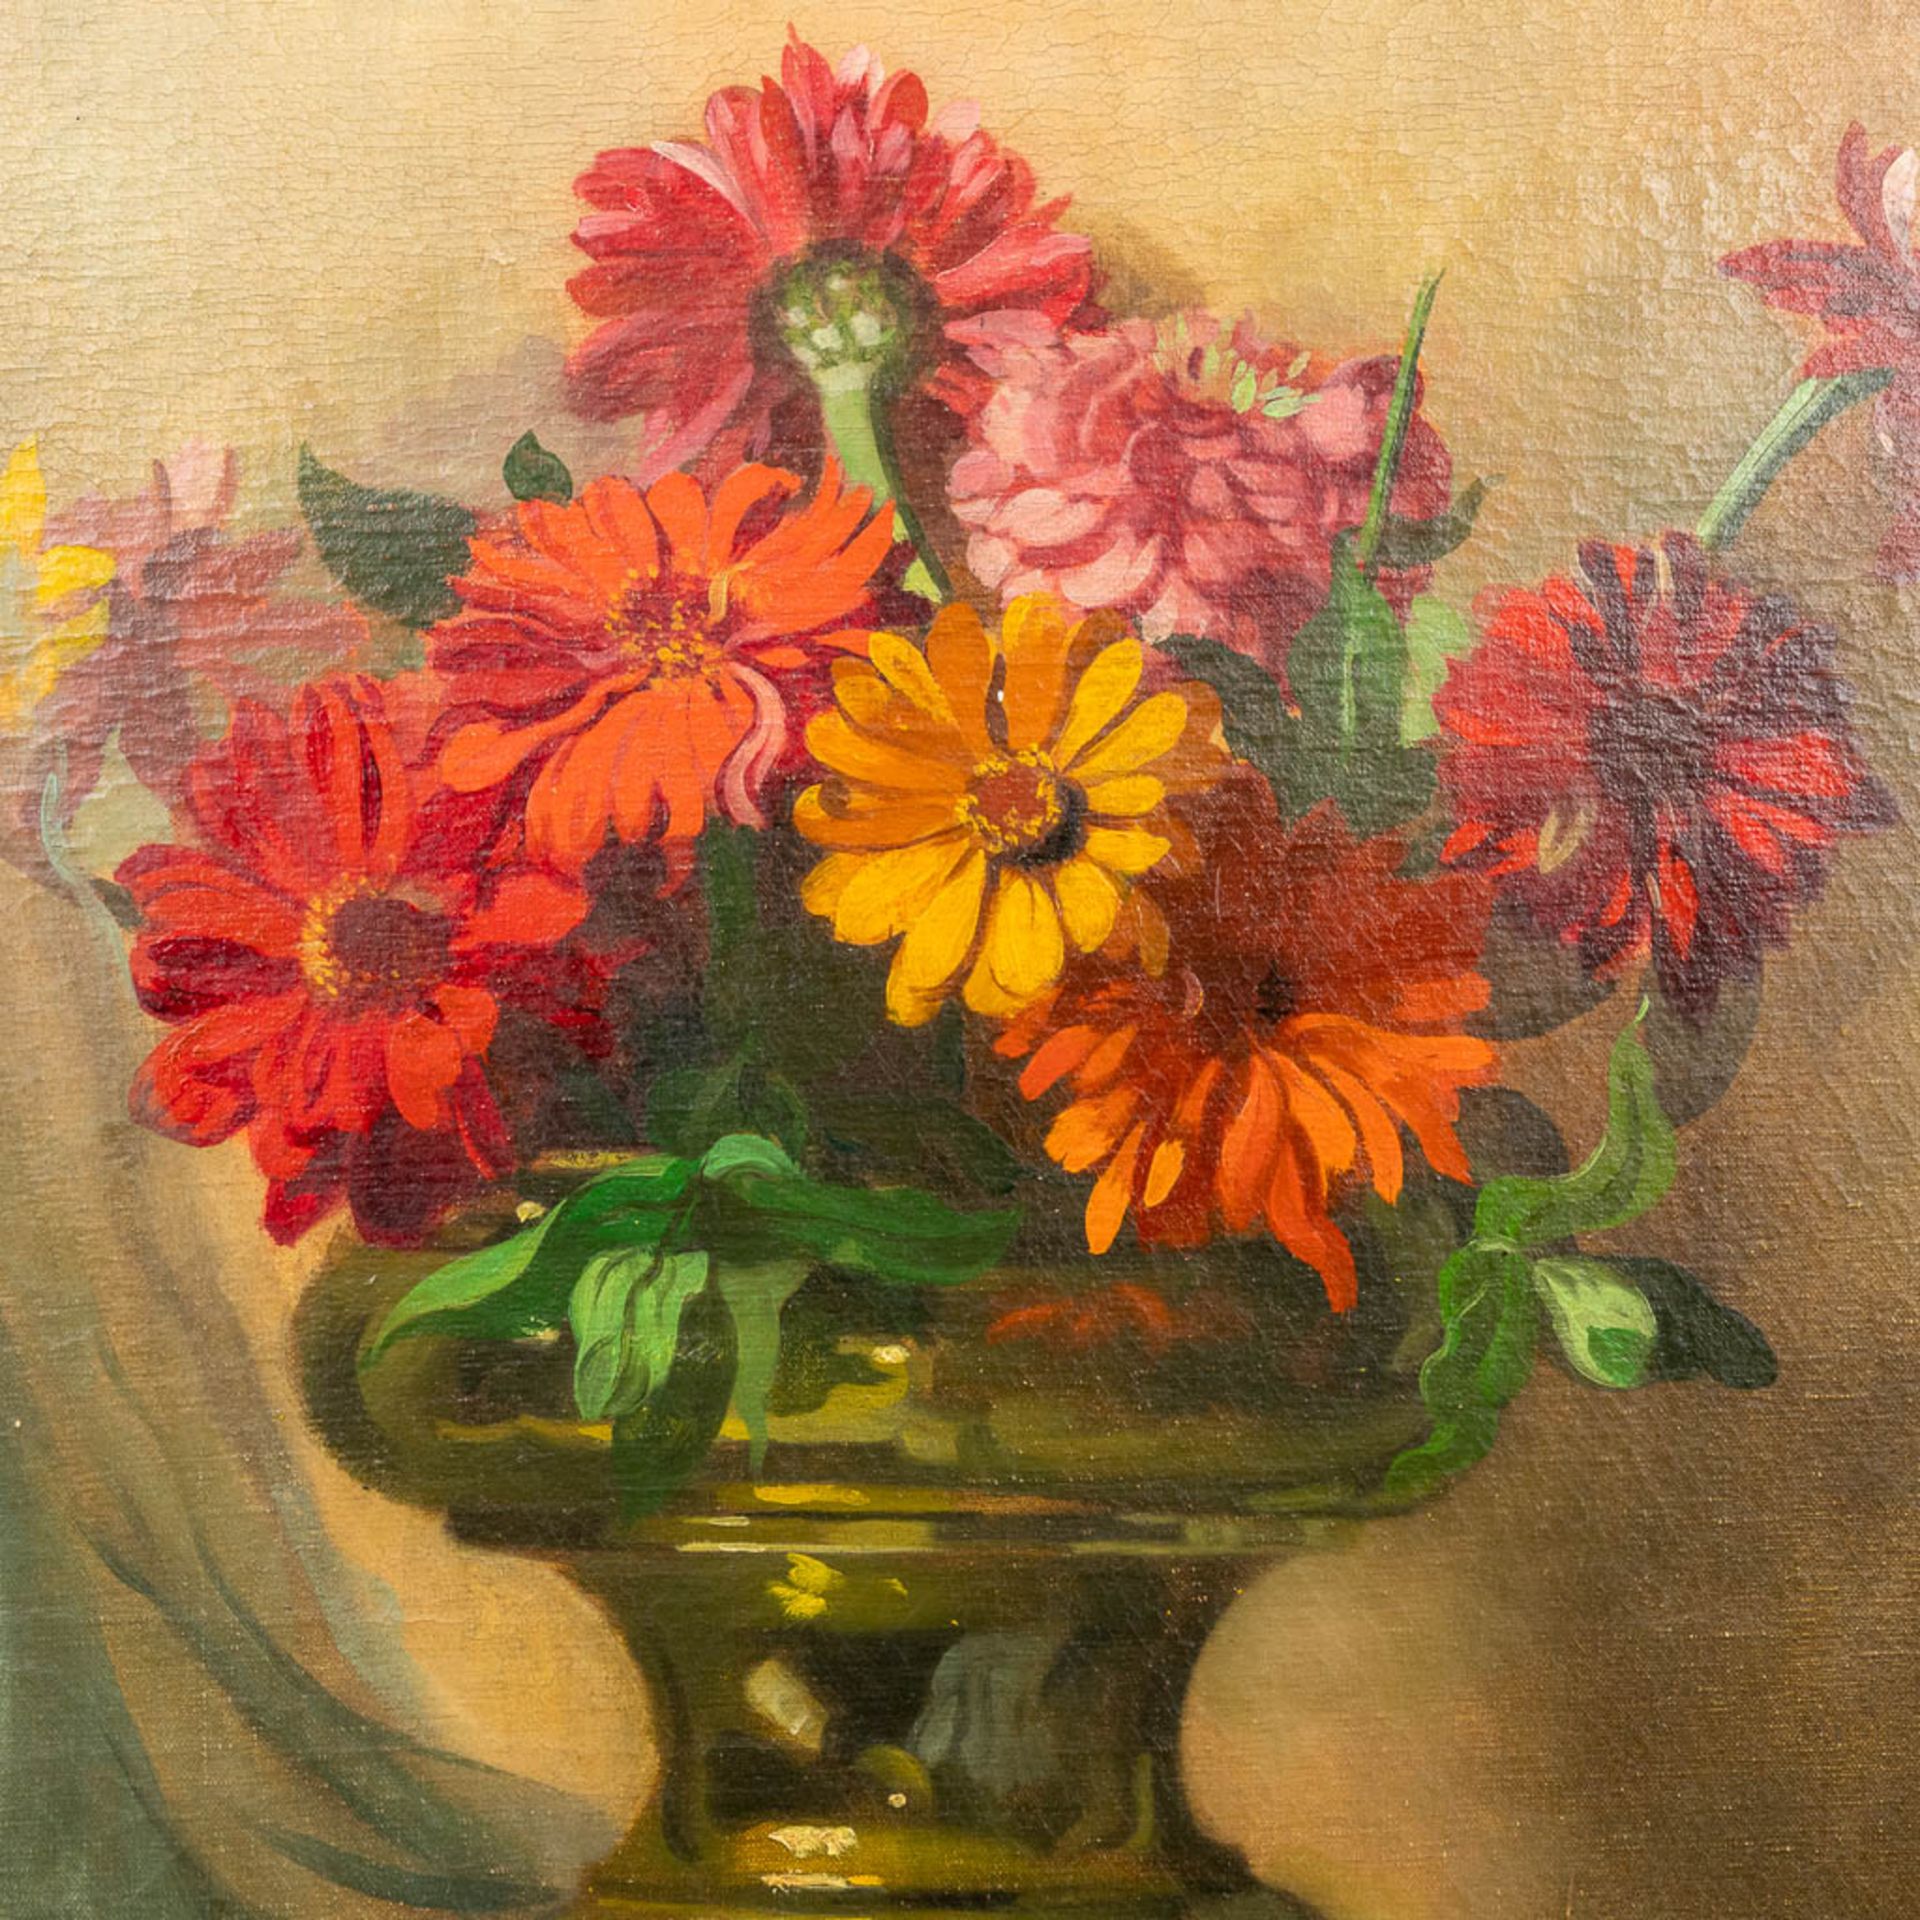 José STORIE (1899-1961) 'Flower Bouquet' a still life painting, oil on canvas. (60 x 70 cm) - Bild 3 aus 6